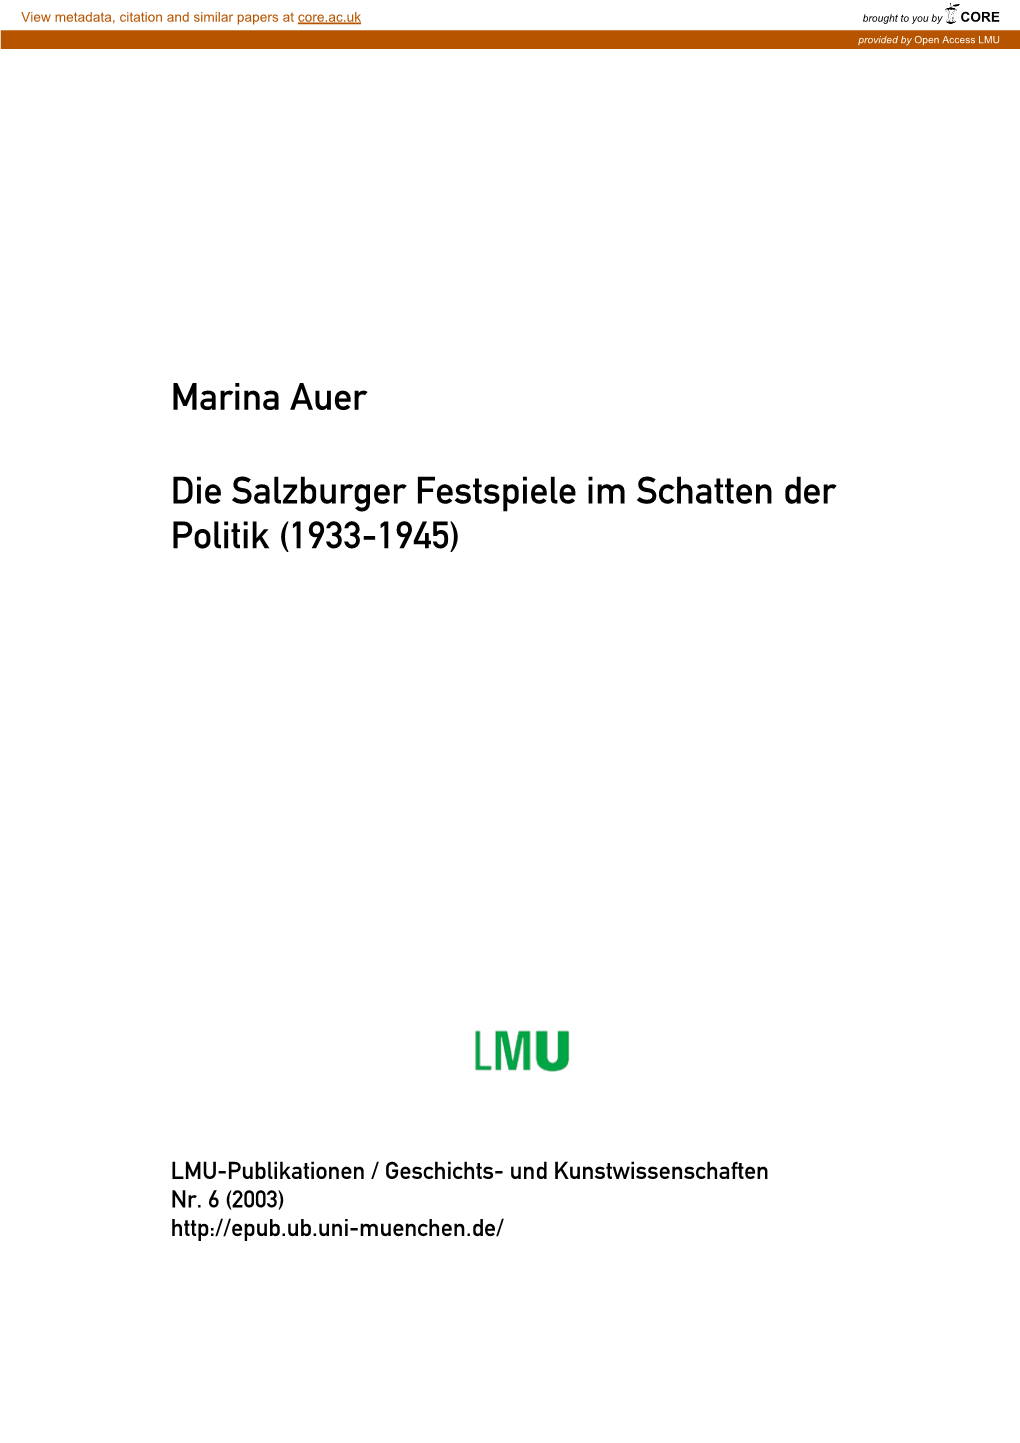 Die Salzburger Festspiele Im Schatten Der Politik (1933-1945)